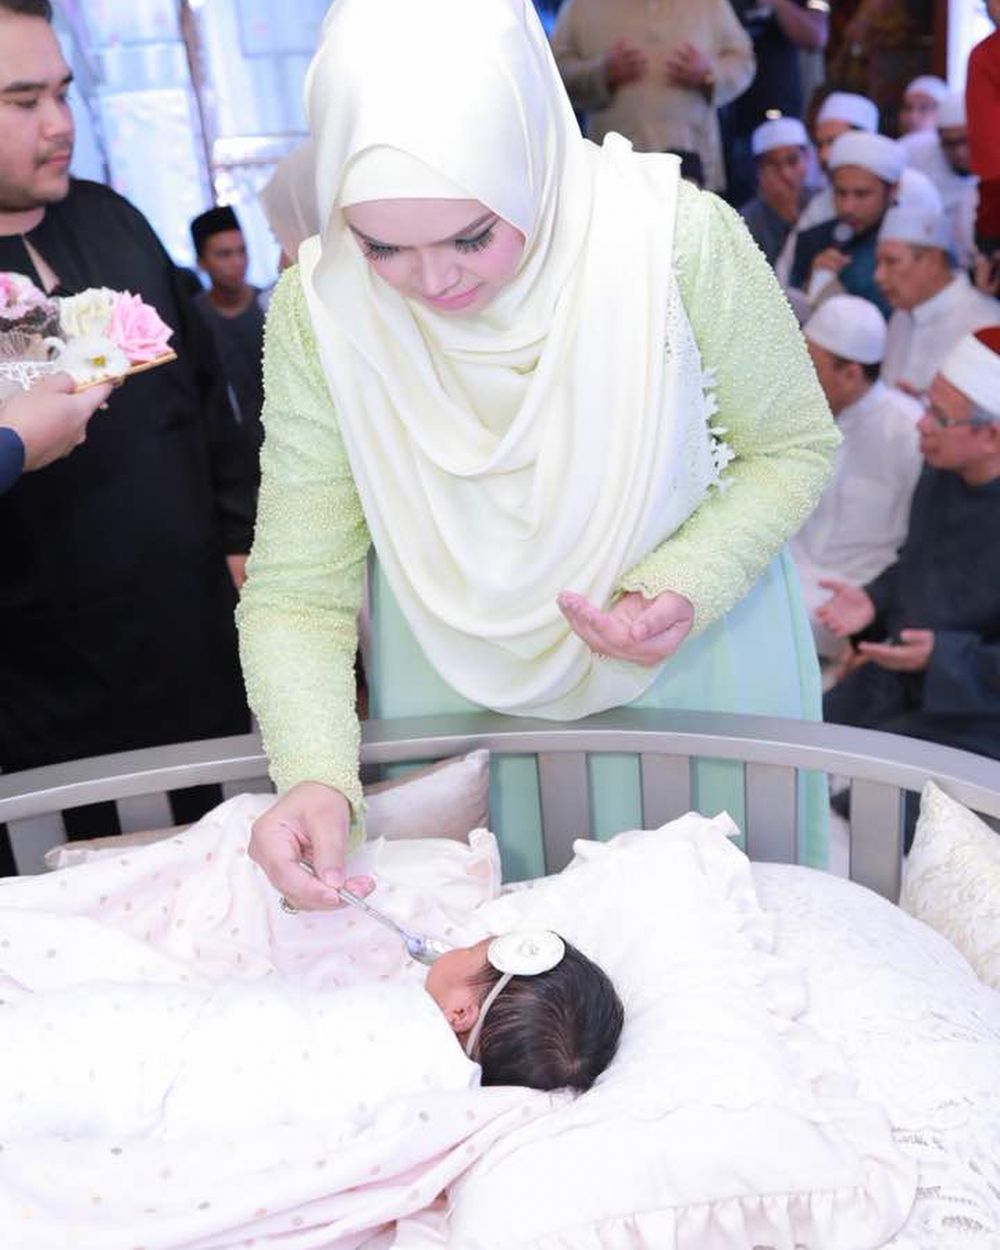 Dikenalkan ke publik, ini 11 momen aqiqah anak pertama Siti Nurhaliza